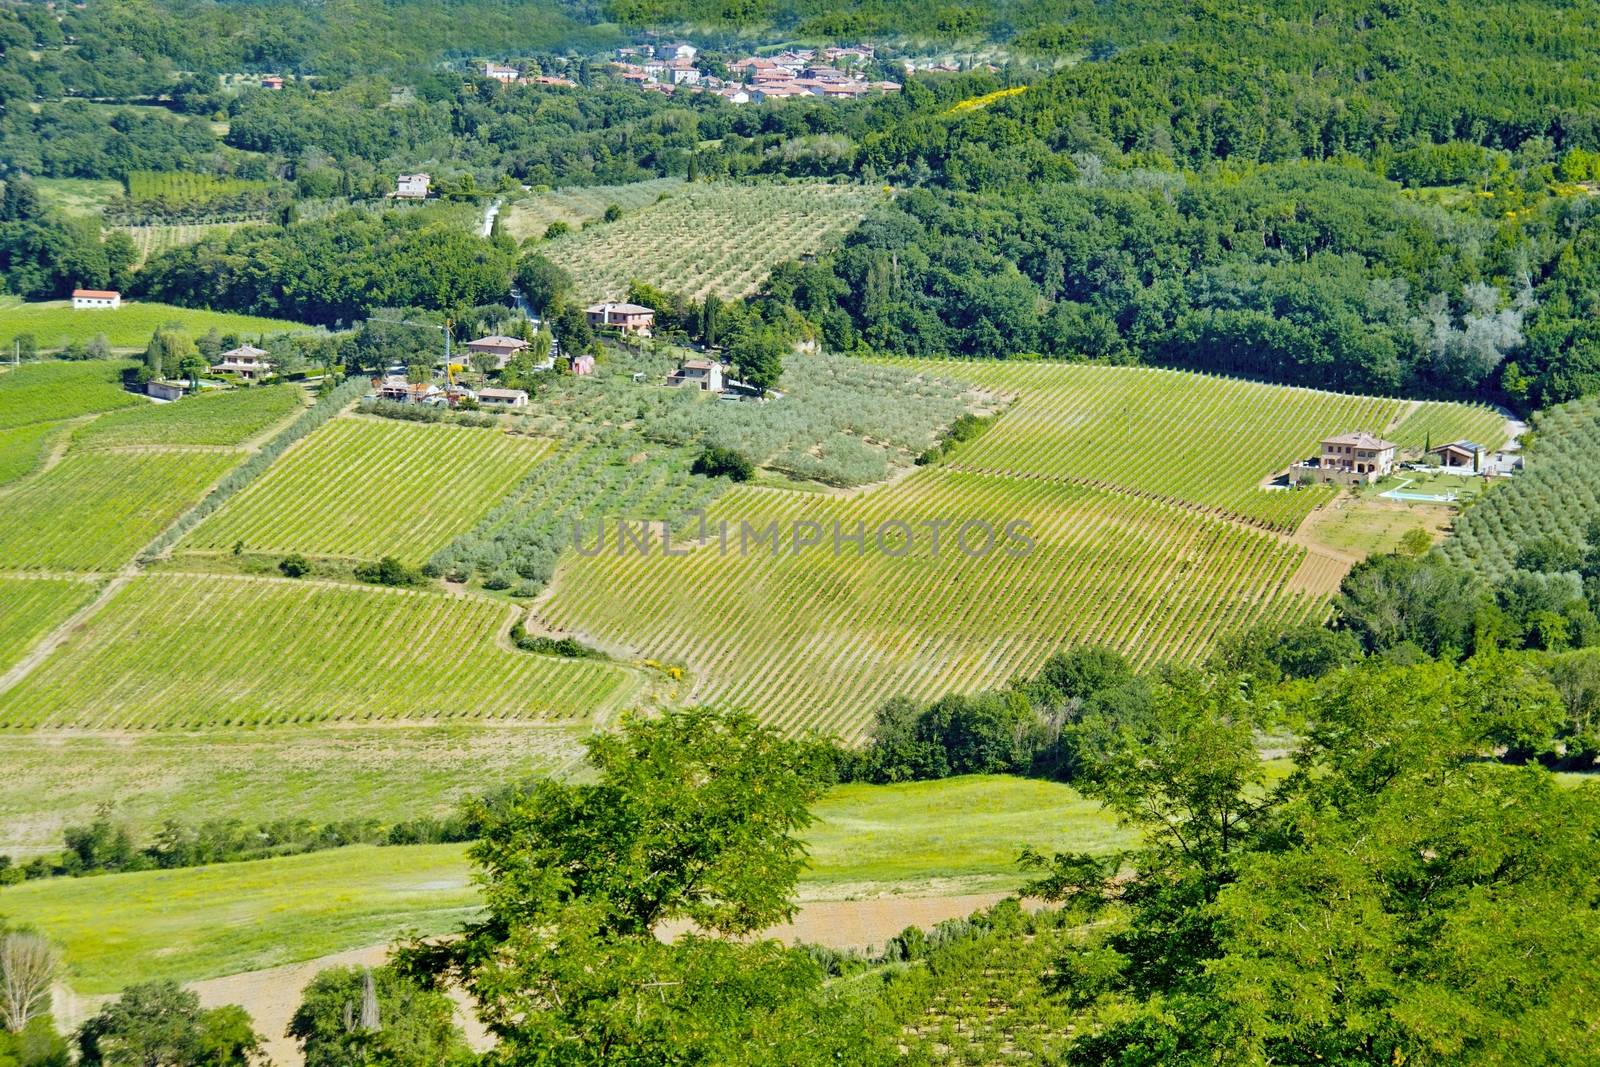 Tuscany landscape by Dermot68